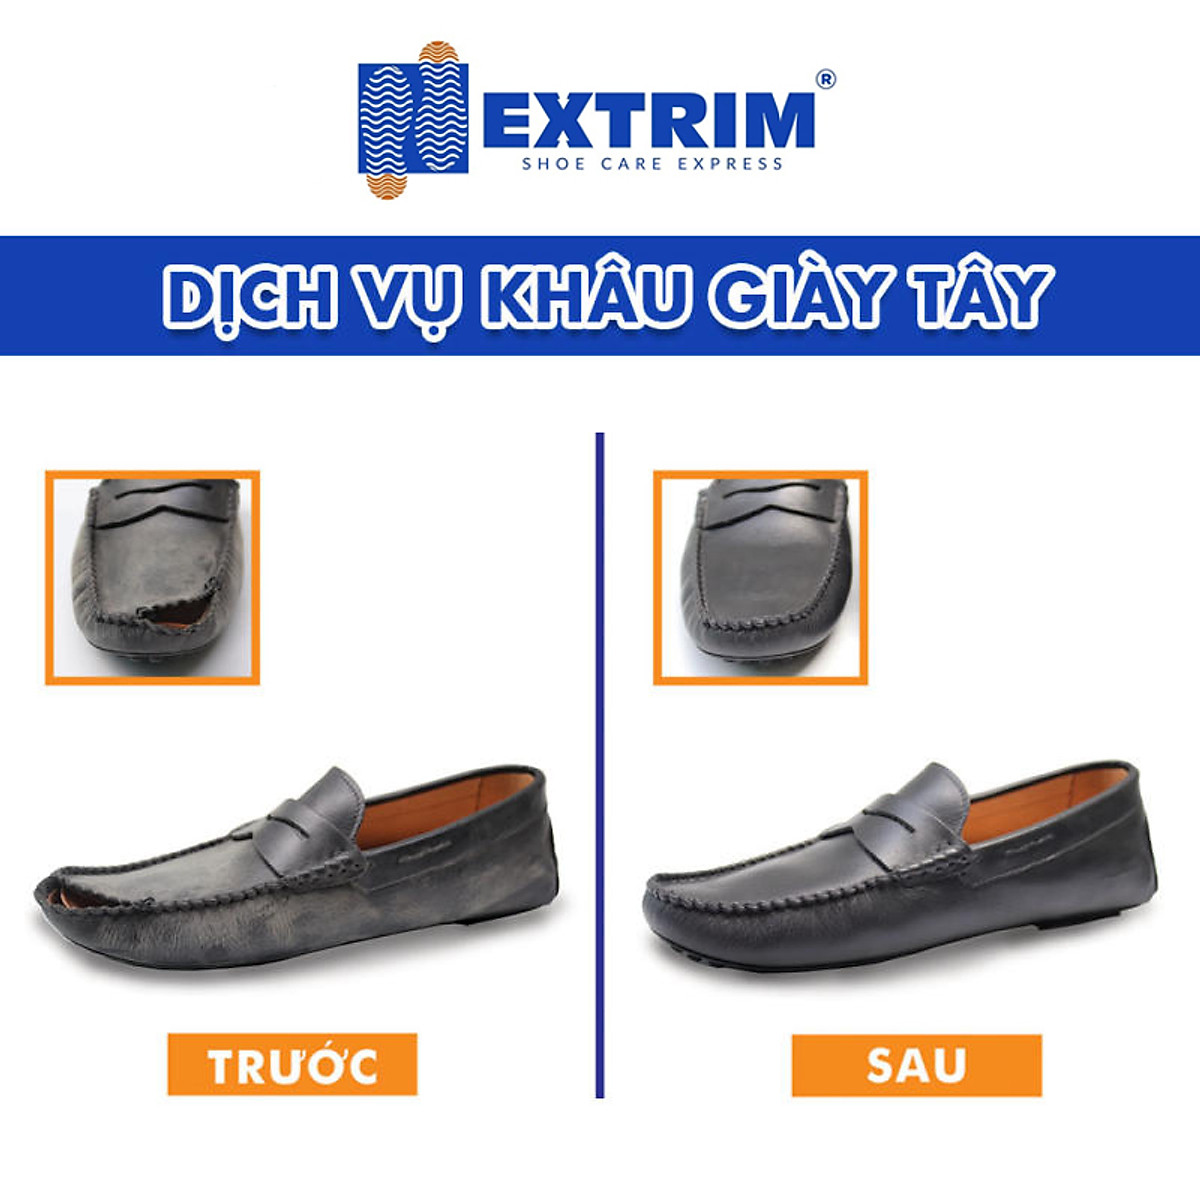 HCM [E-voucher] -  Trọn gói dịch vụ khâu vá thân giày cho giày bị rách tại Extrim Vệ Sinh Giày